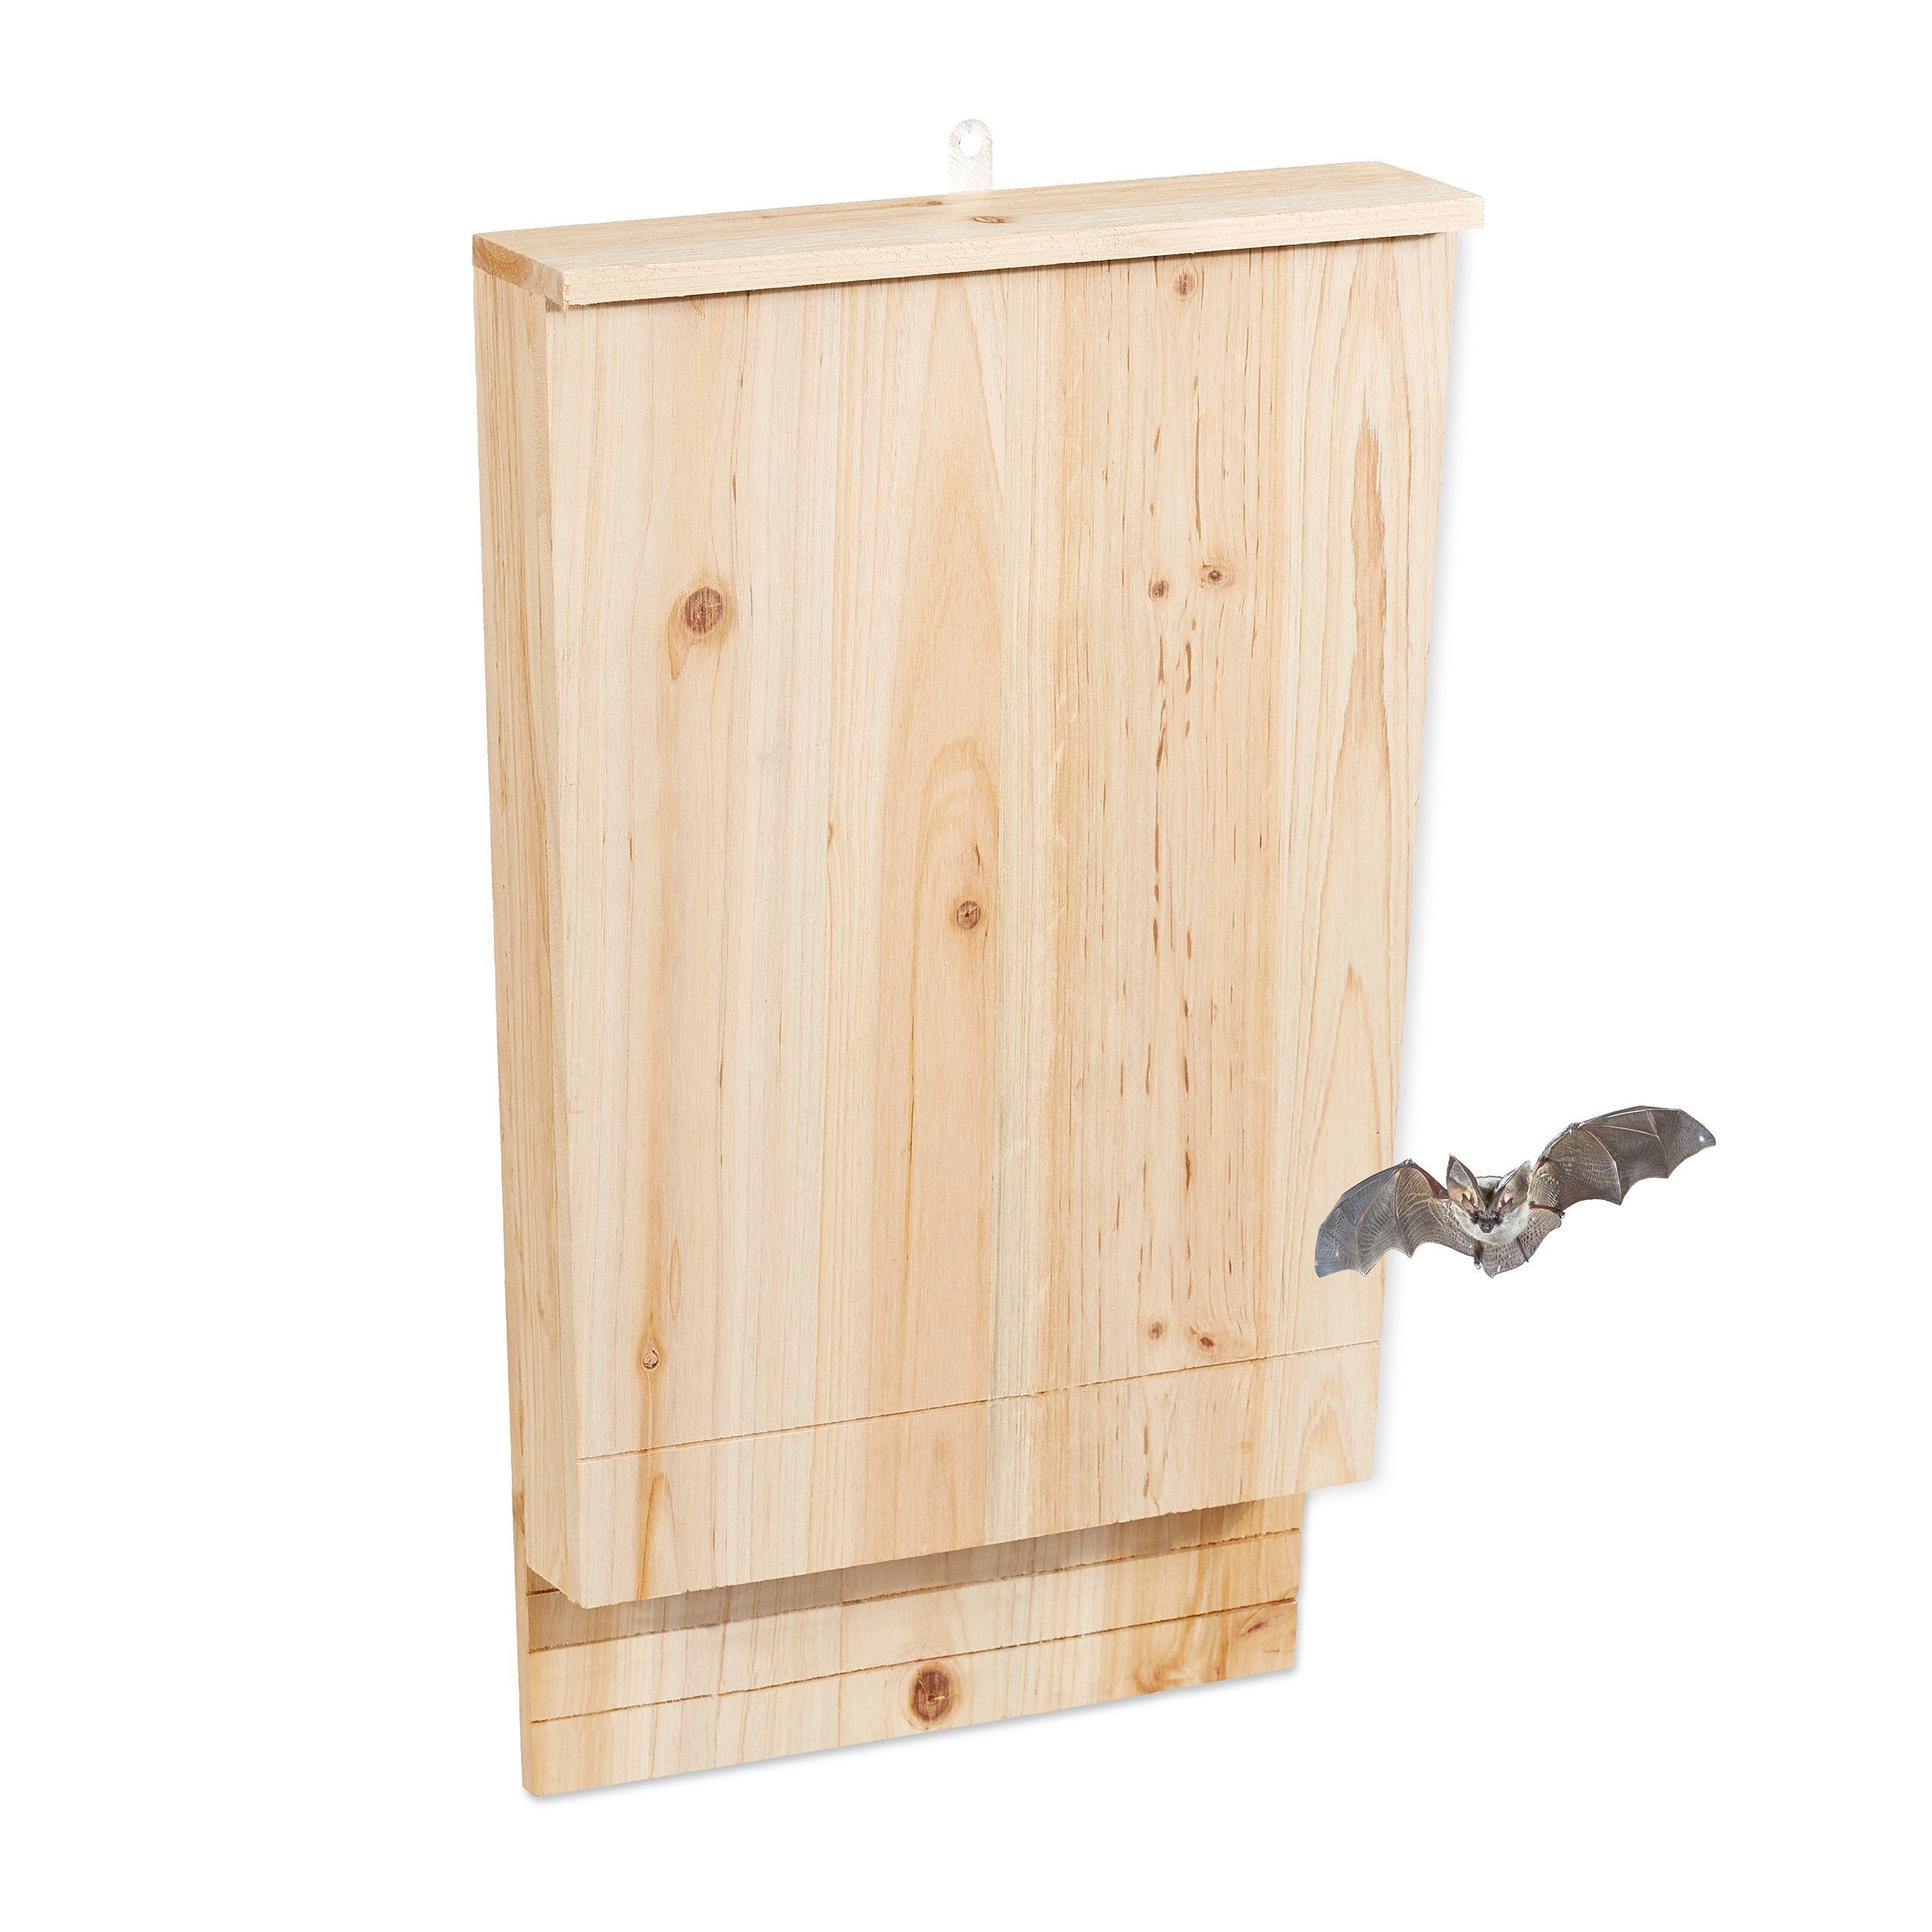 XL relaxdays Holz Fledermauskasten Vogelhaus aus